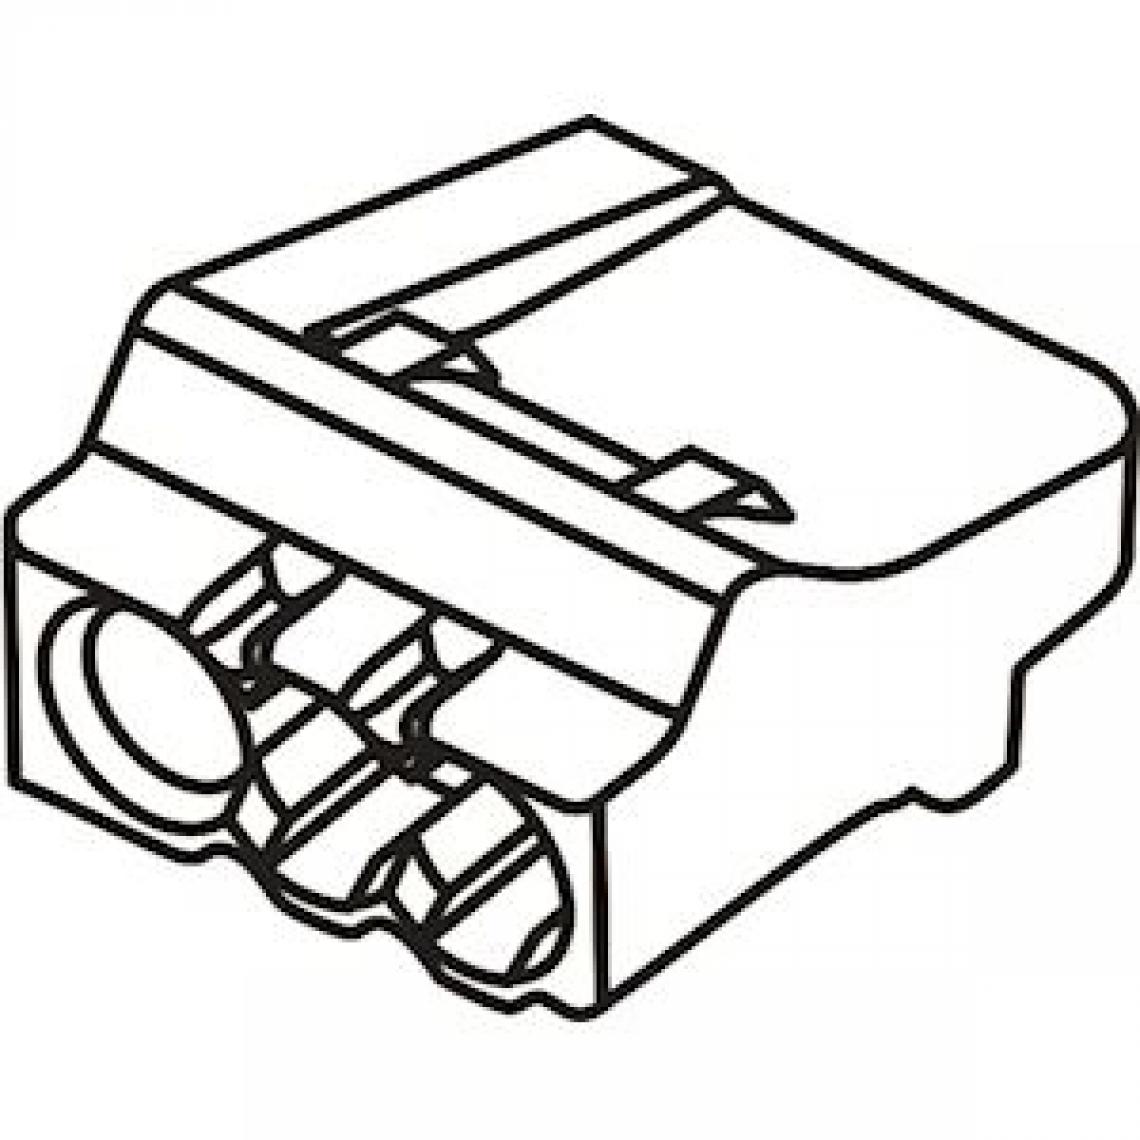 Bizline - borne de connexion - automatique - 3 entrées - 0.5 à 2.5 mm - orange - boite de 150 - bizline 103403 - Accessoires de câblage